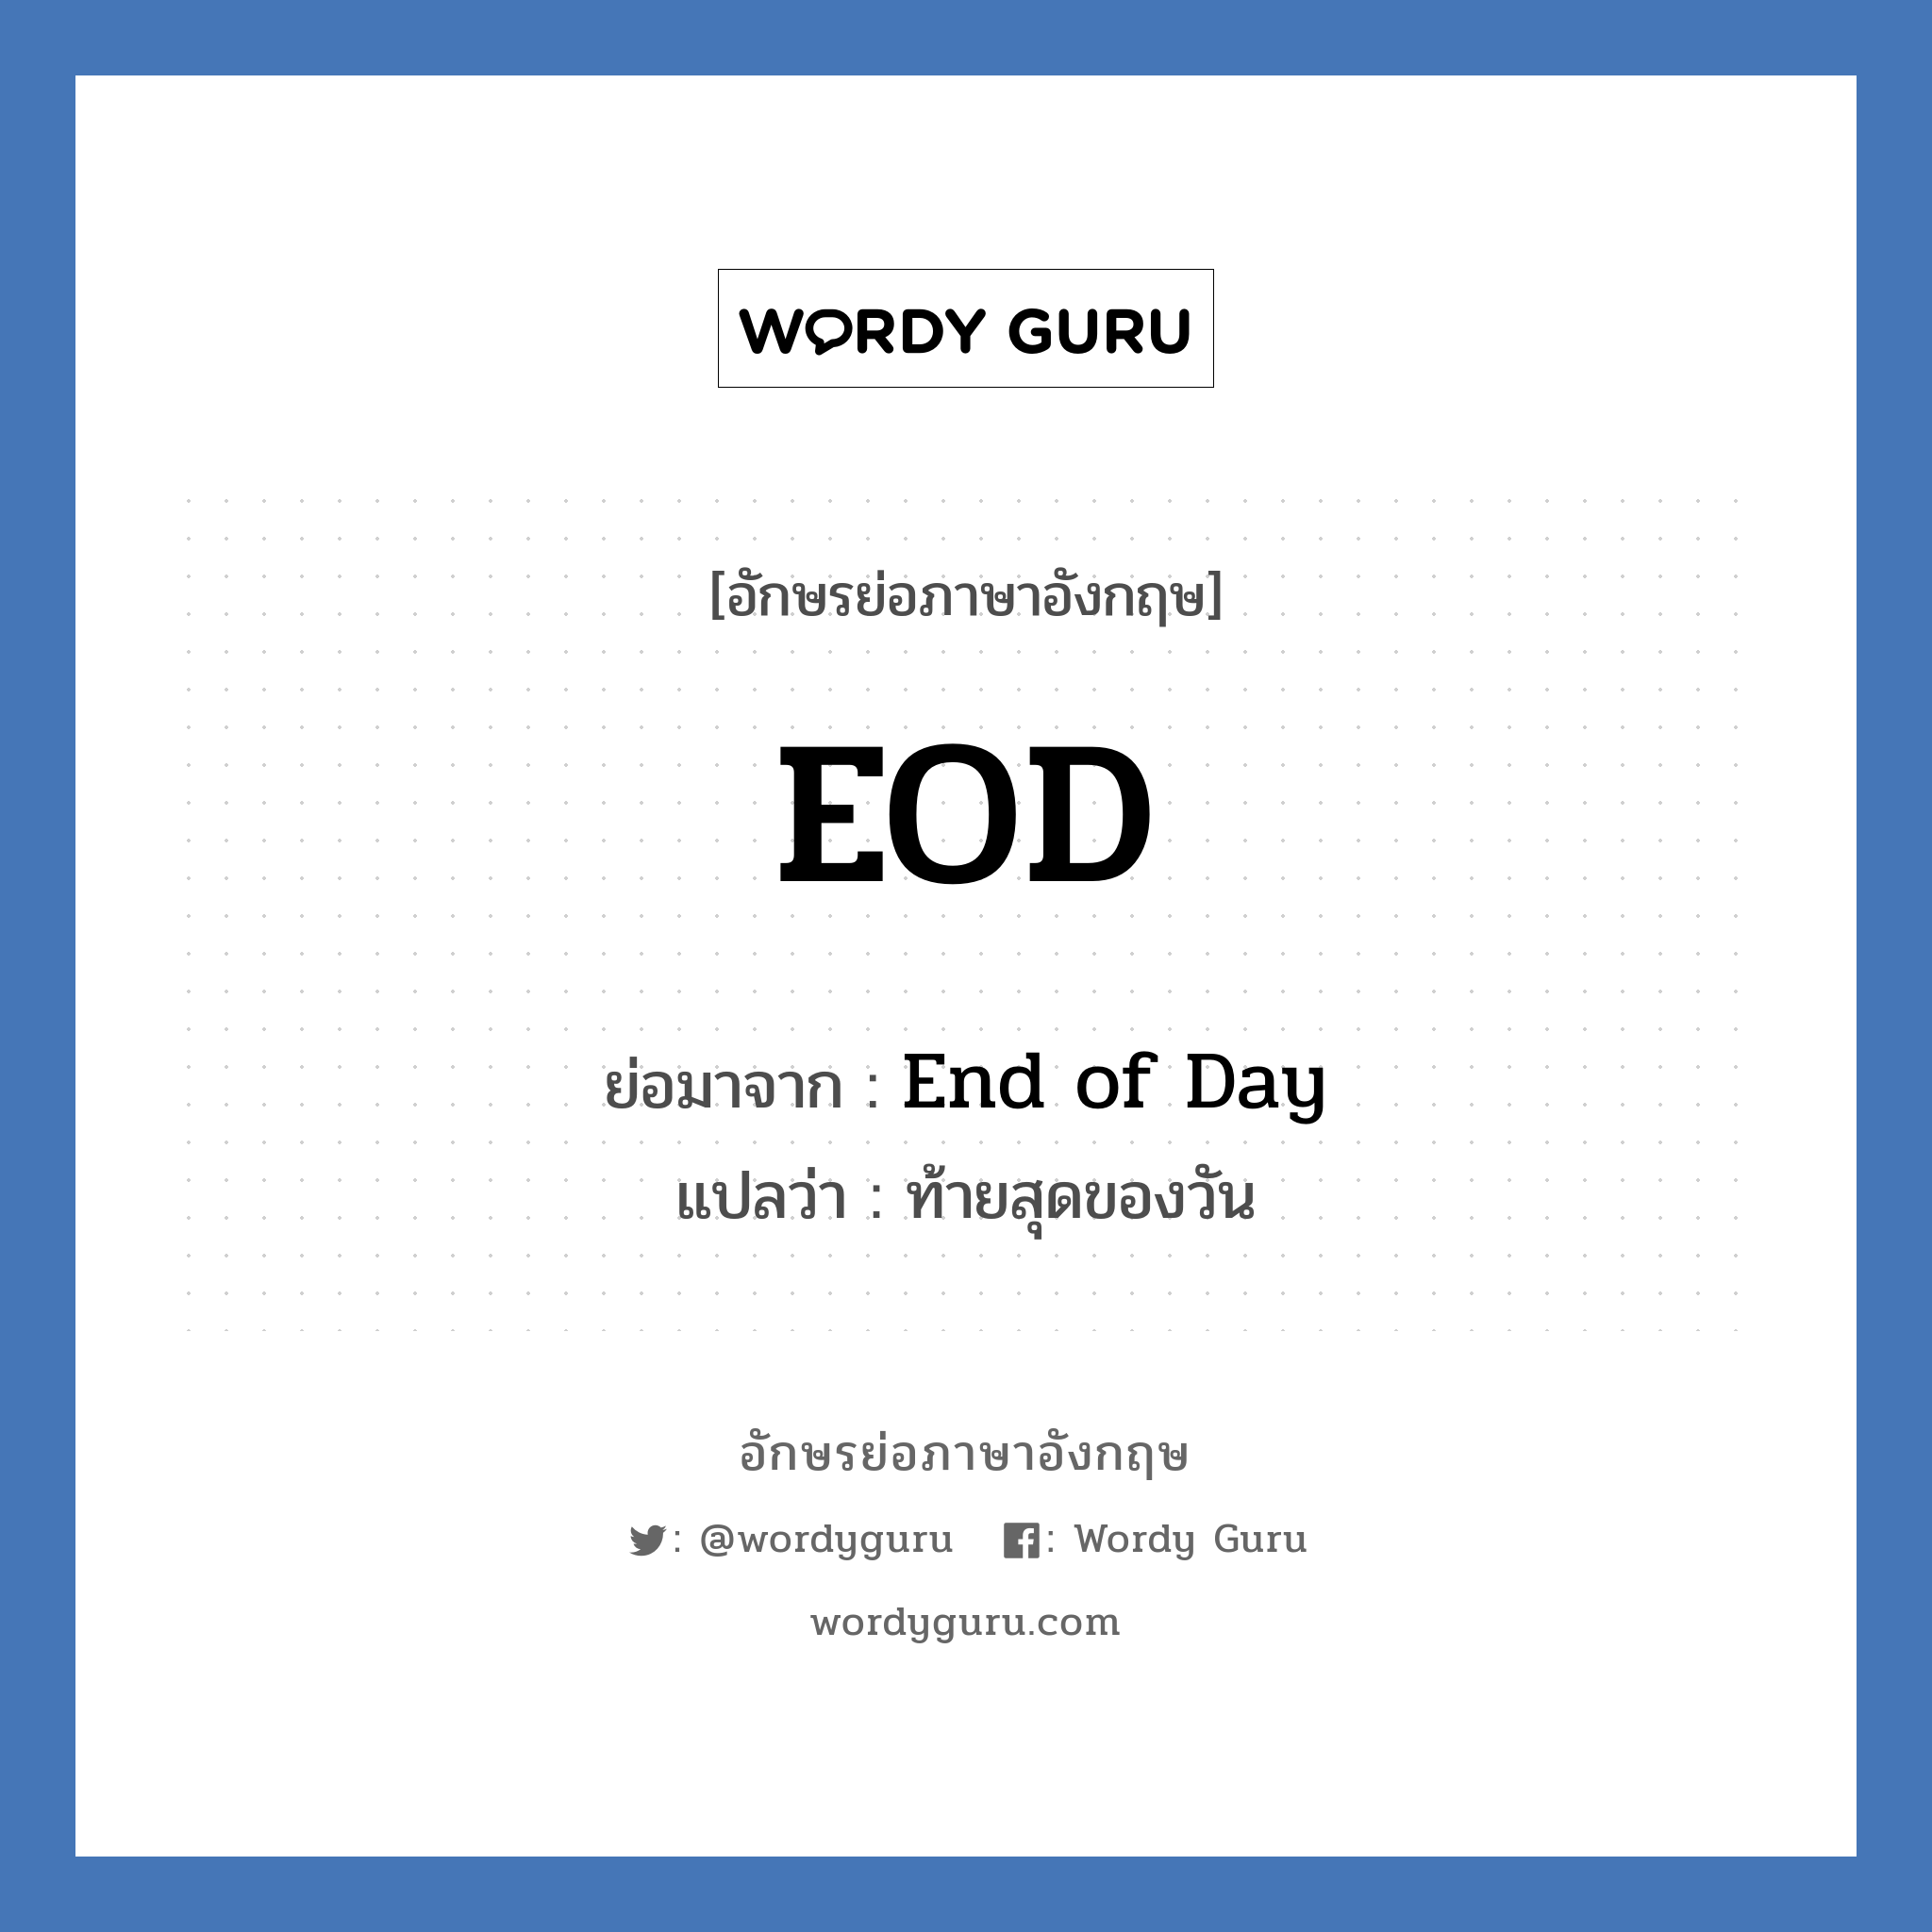 EOD ย่อมาจาก? แปลว่า?, อักษรย่อภาษาอังกฤษ EOD ย่อมาจาก End of Day แปลว่า ท้ายสุดของวัน